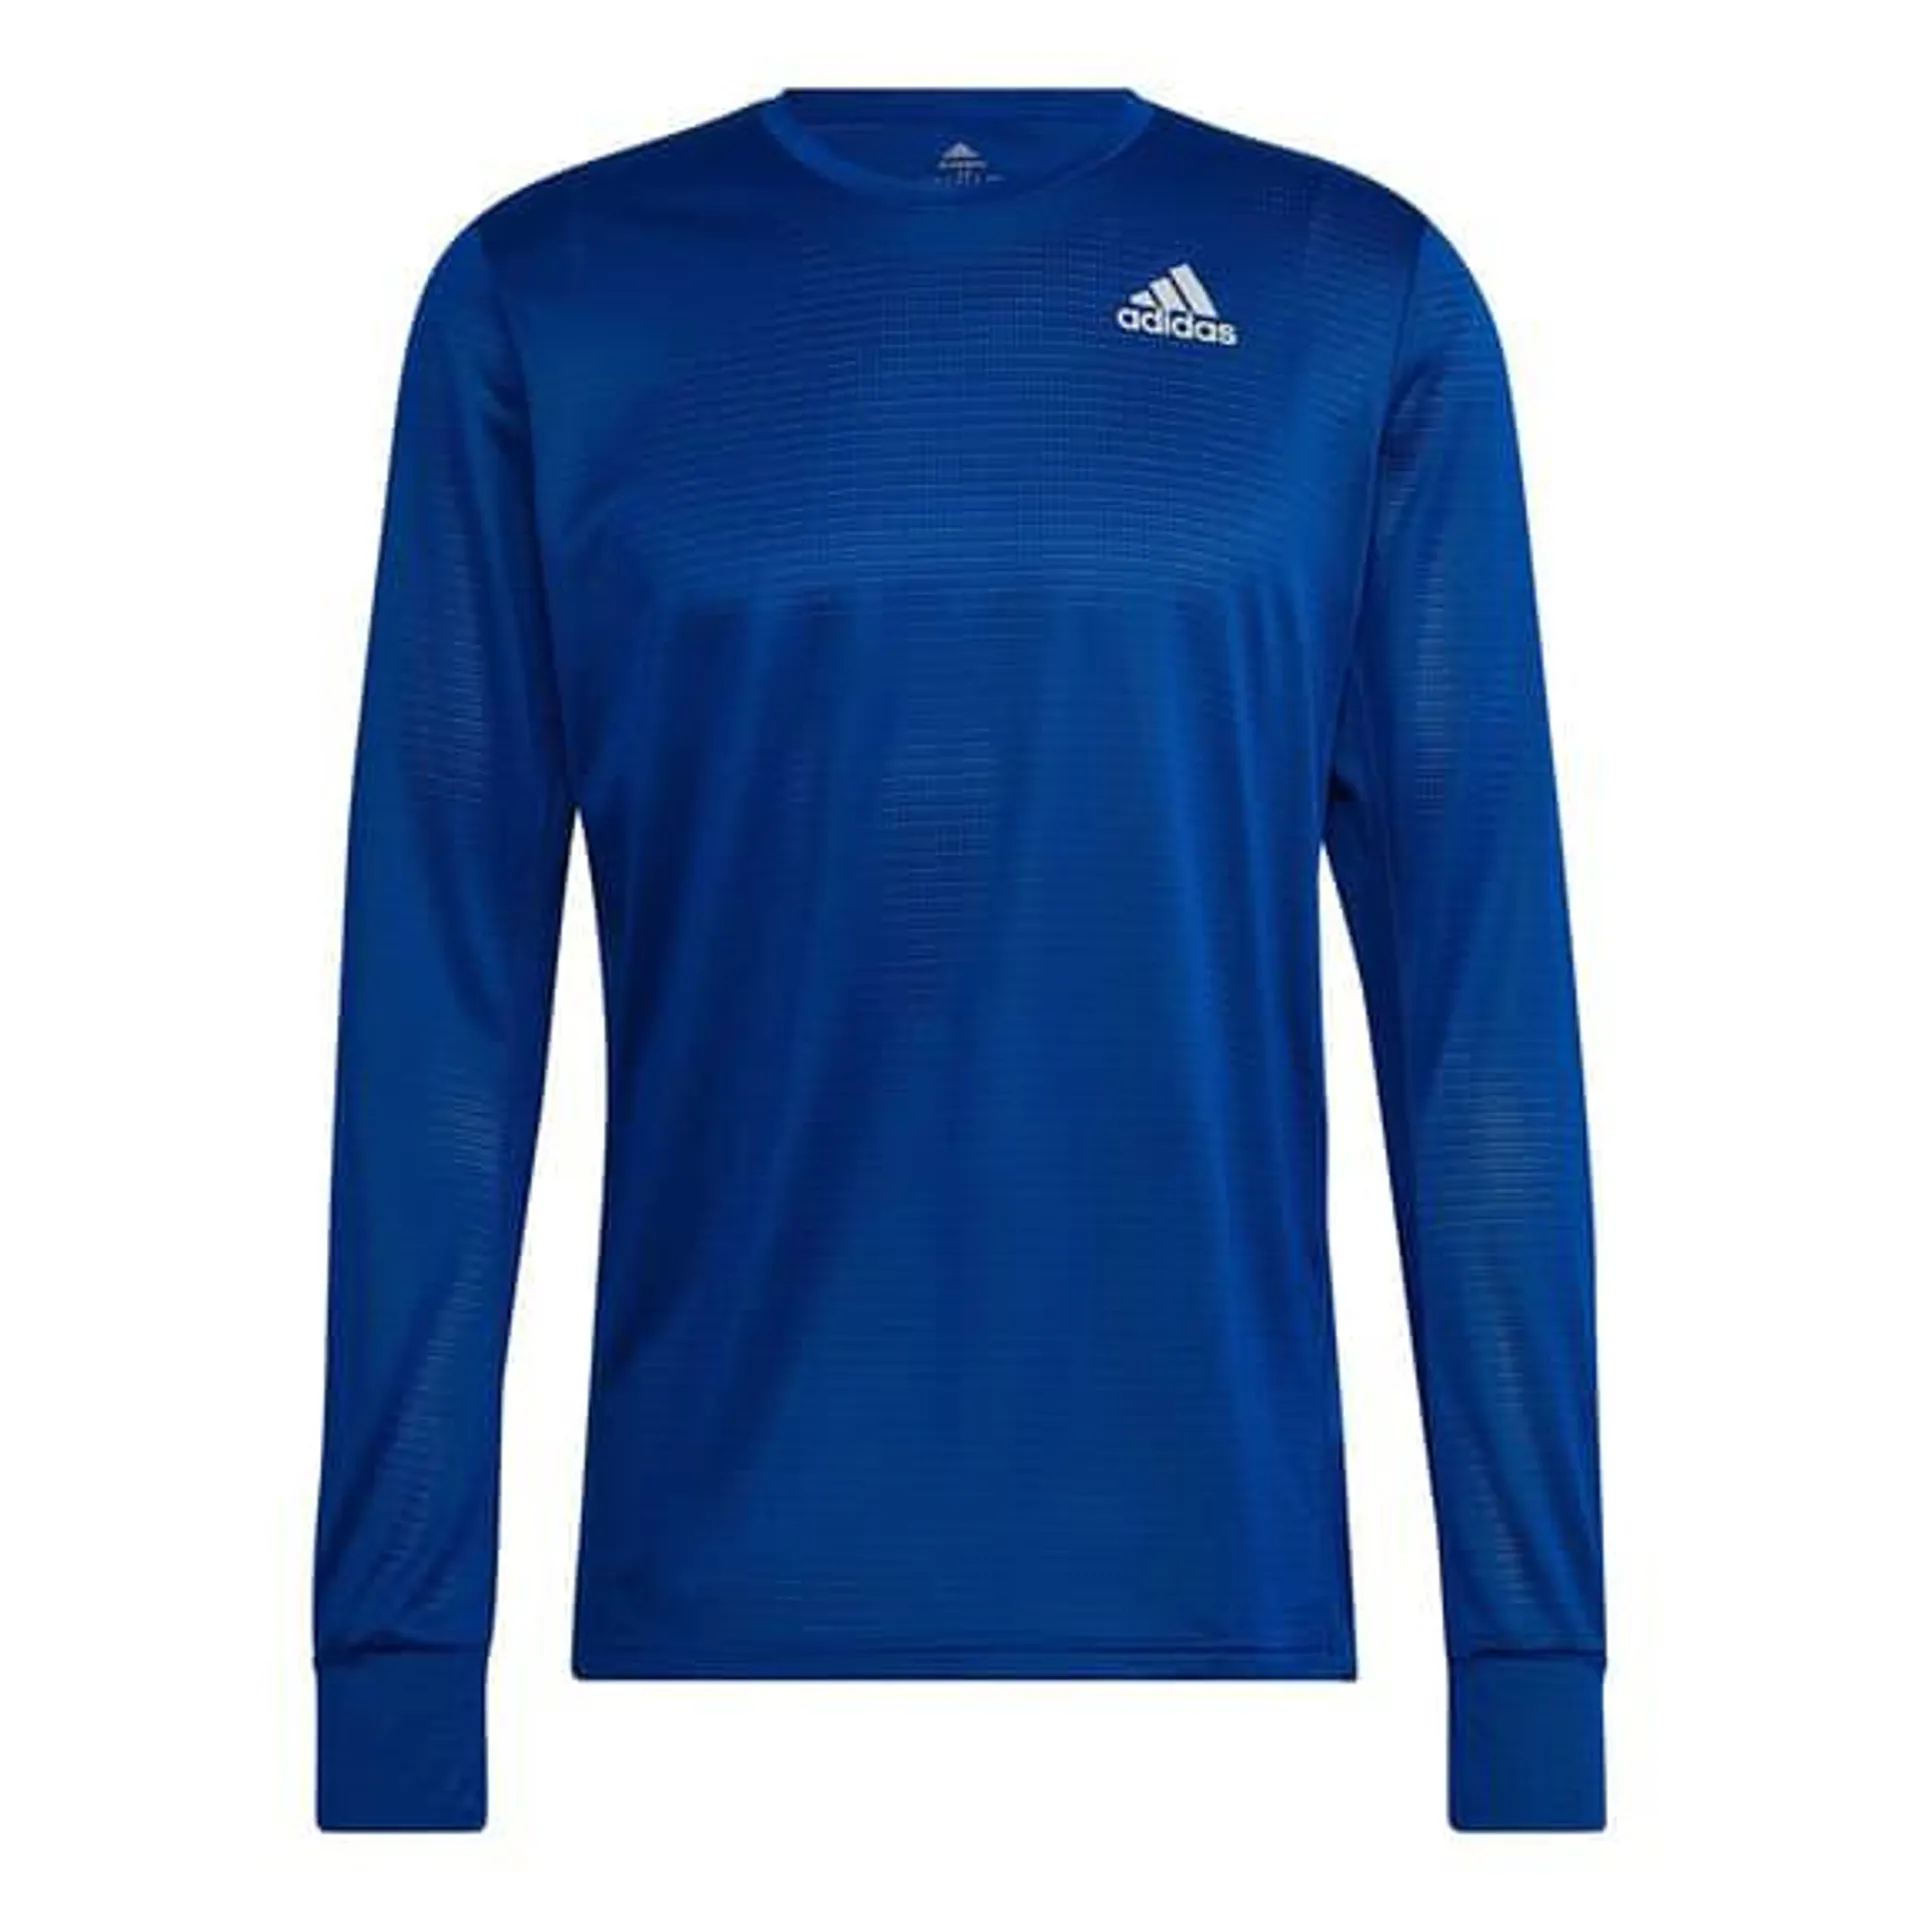 T-shirt adidas Own The Run manche longue bleu marine